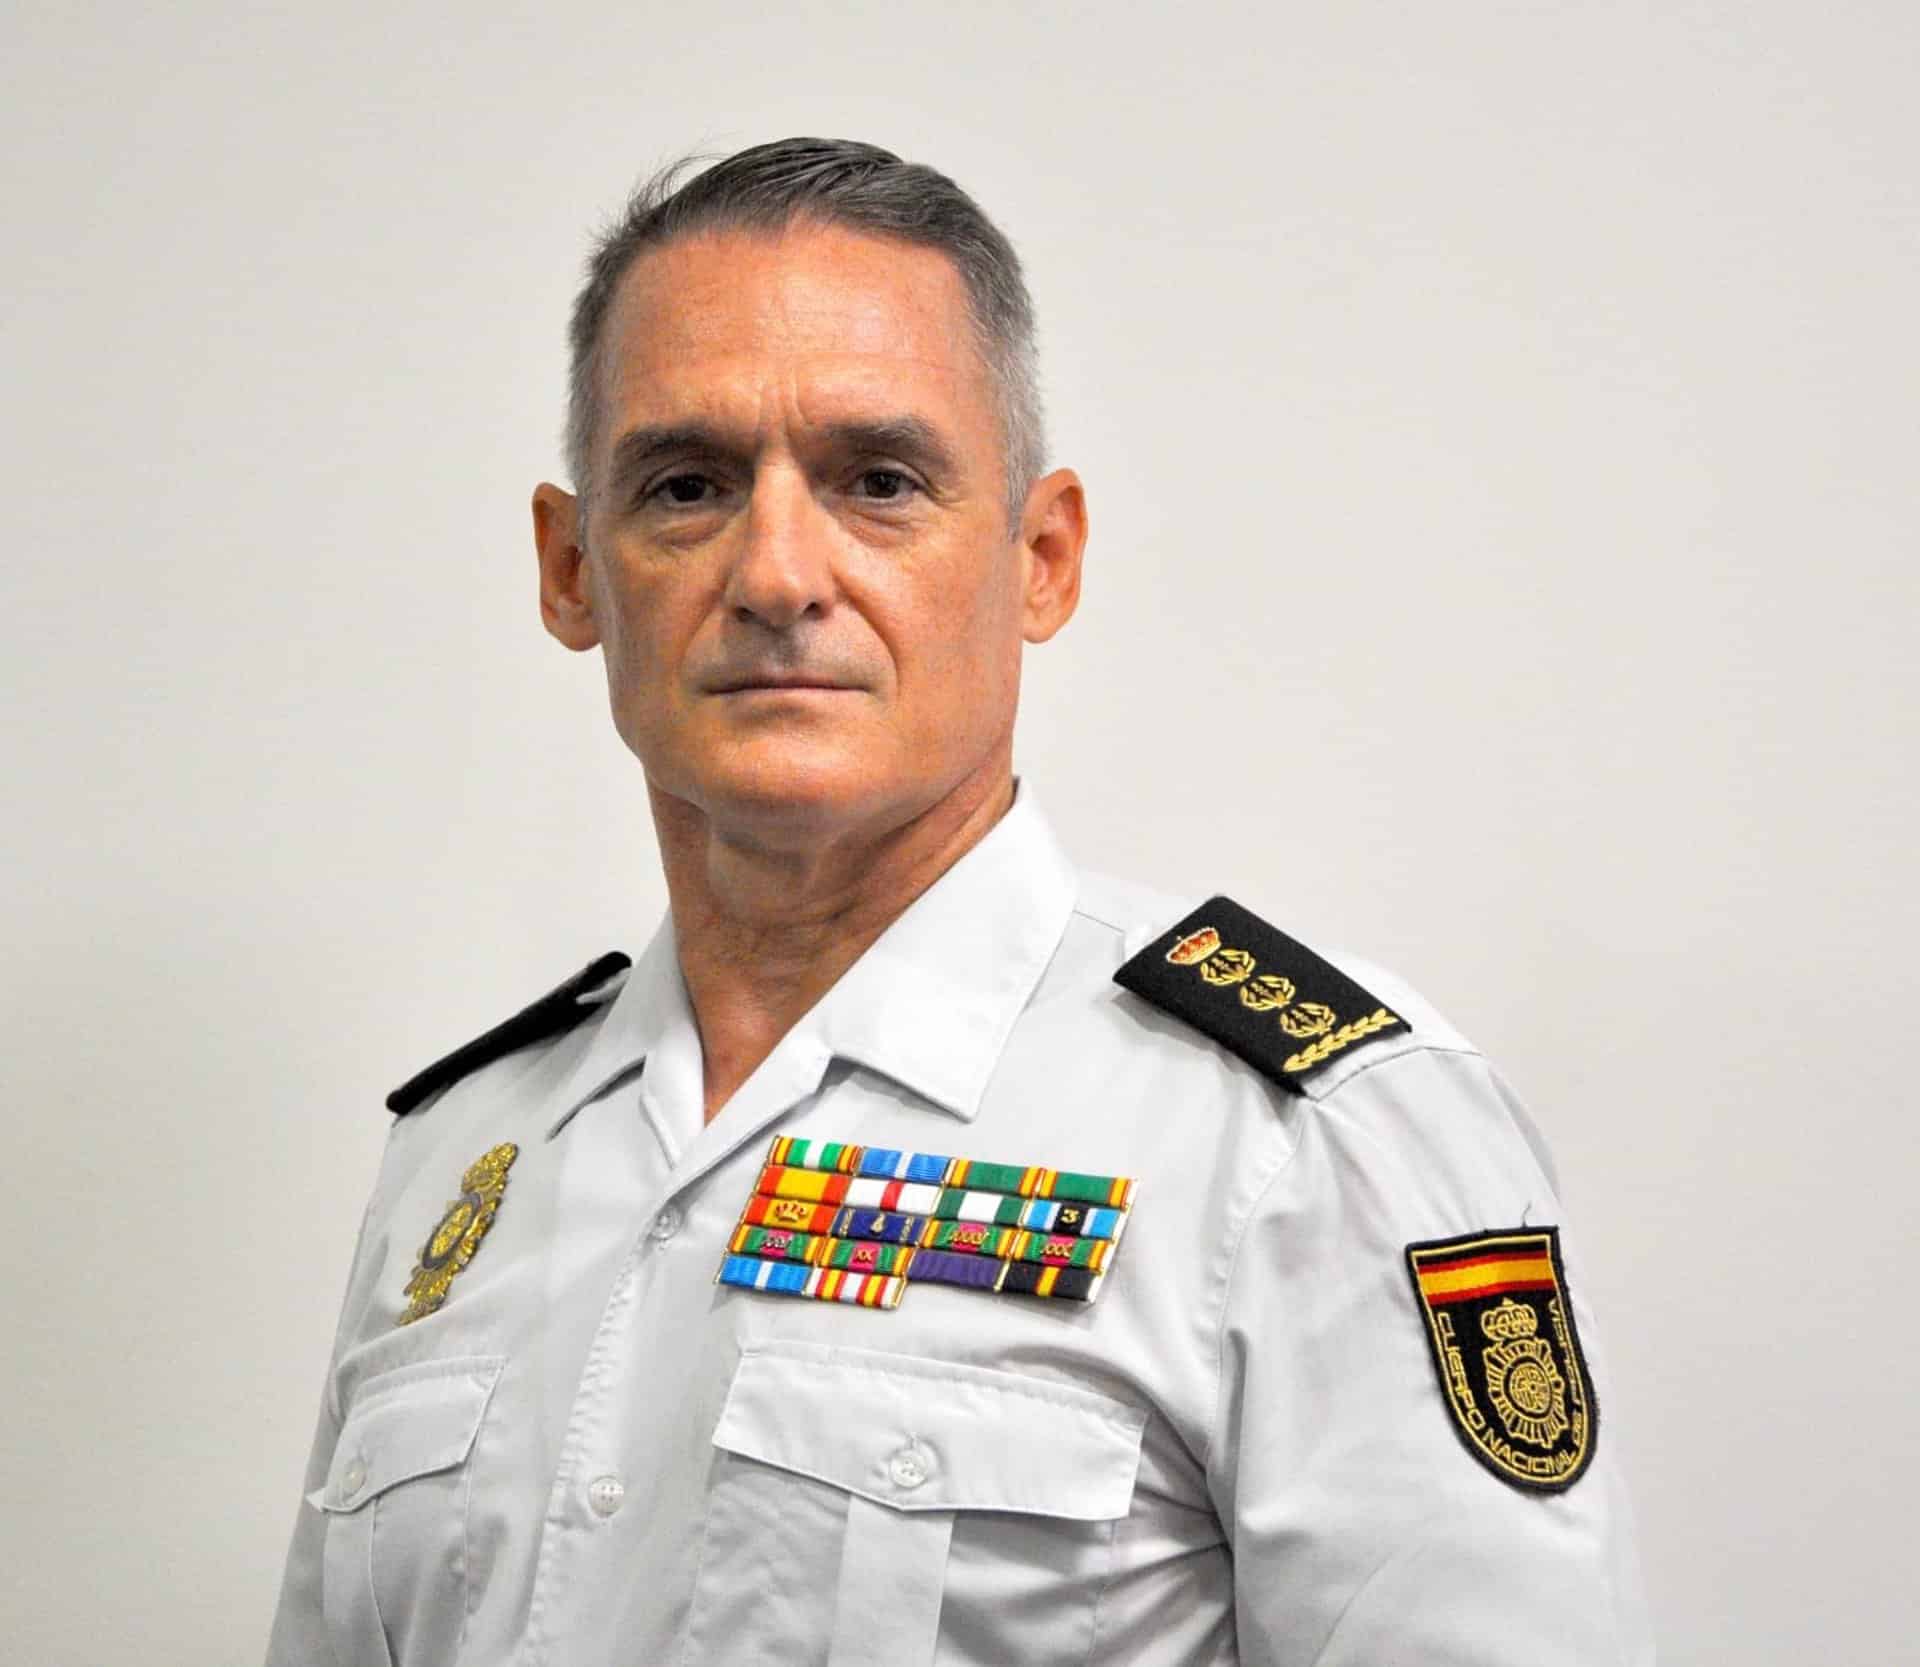 El comisario Ignacio del Olmo, nuevo jefe superior de la Policía en Murcia